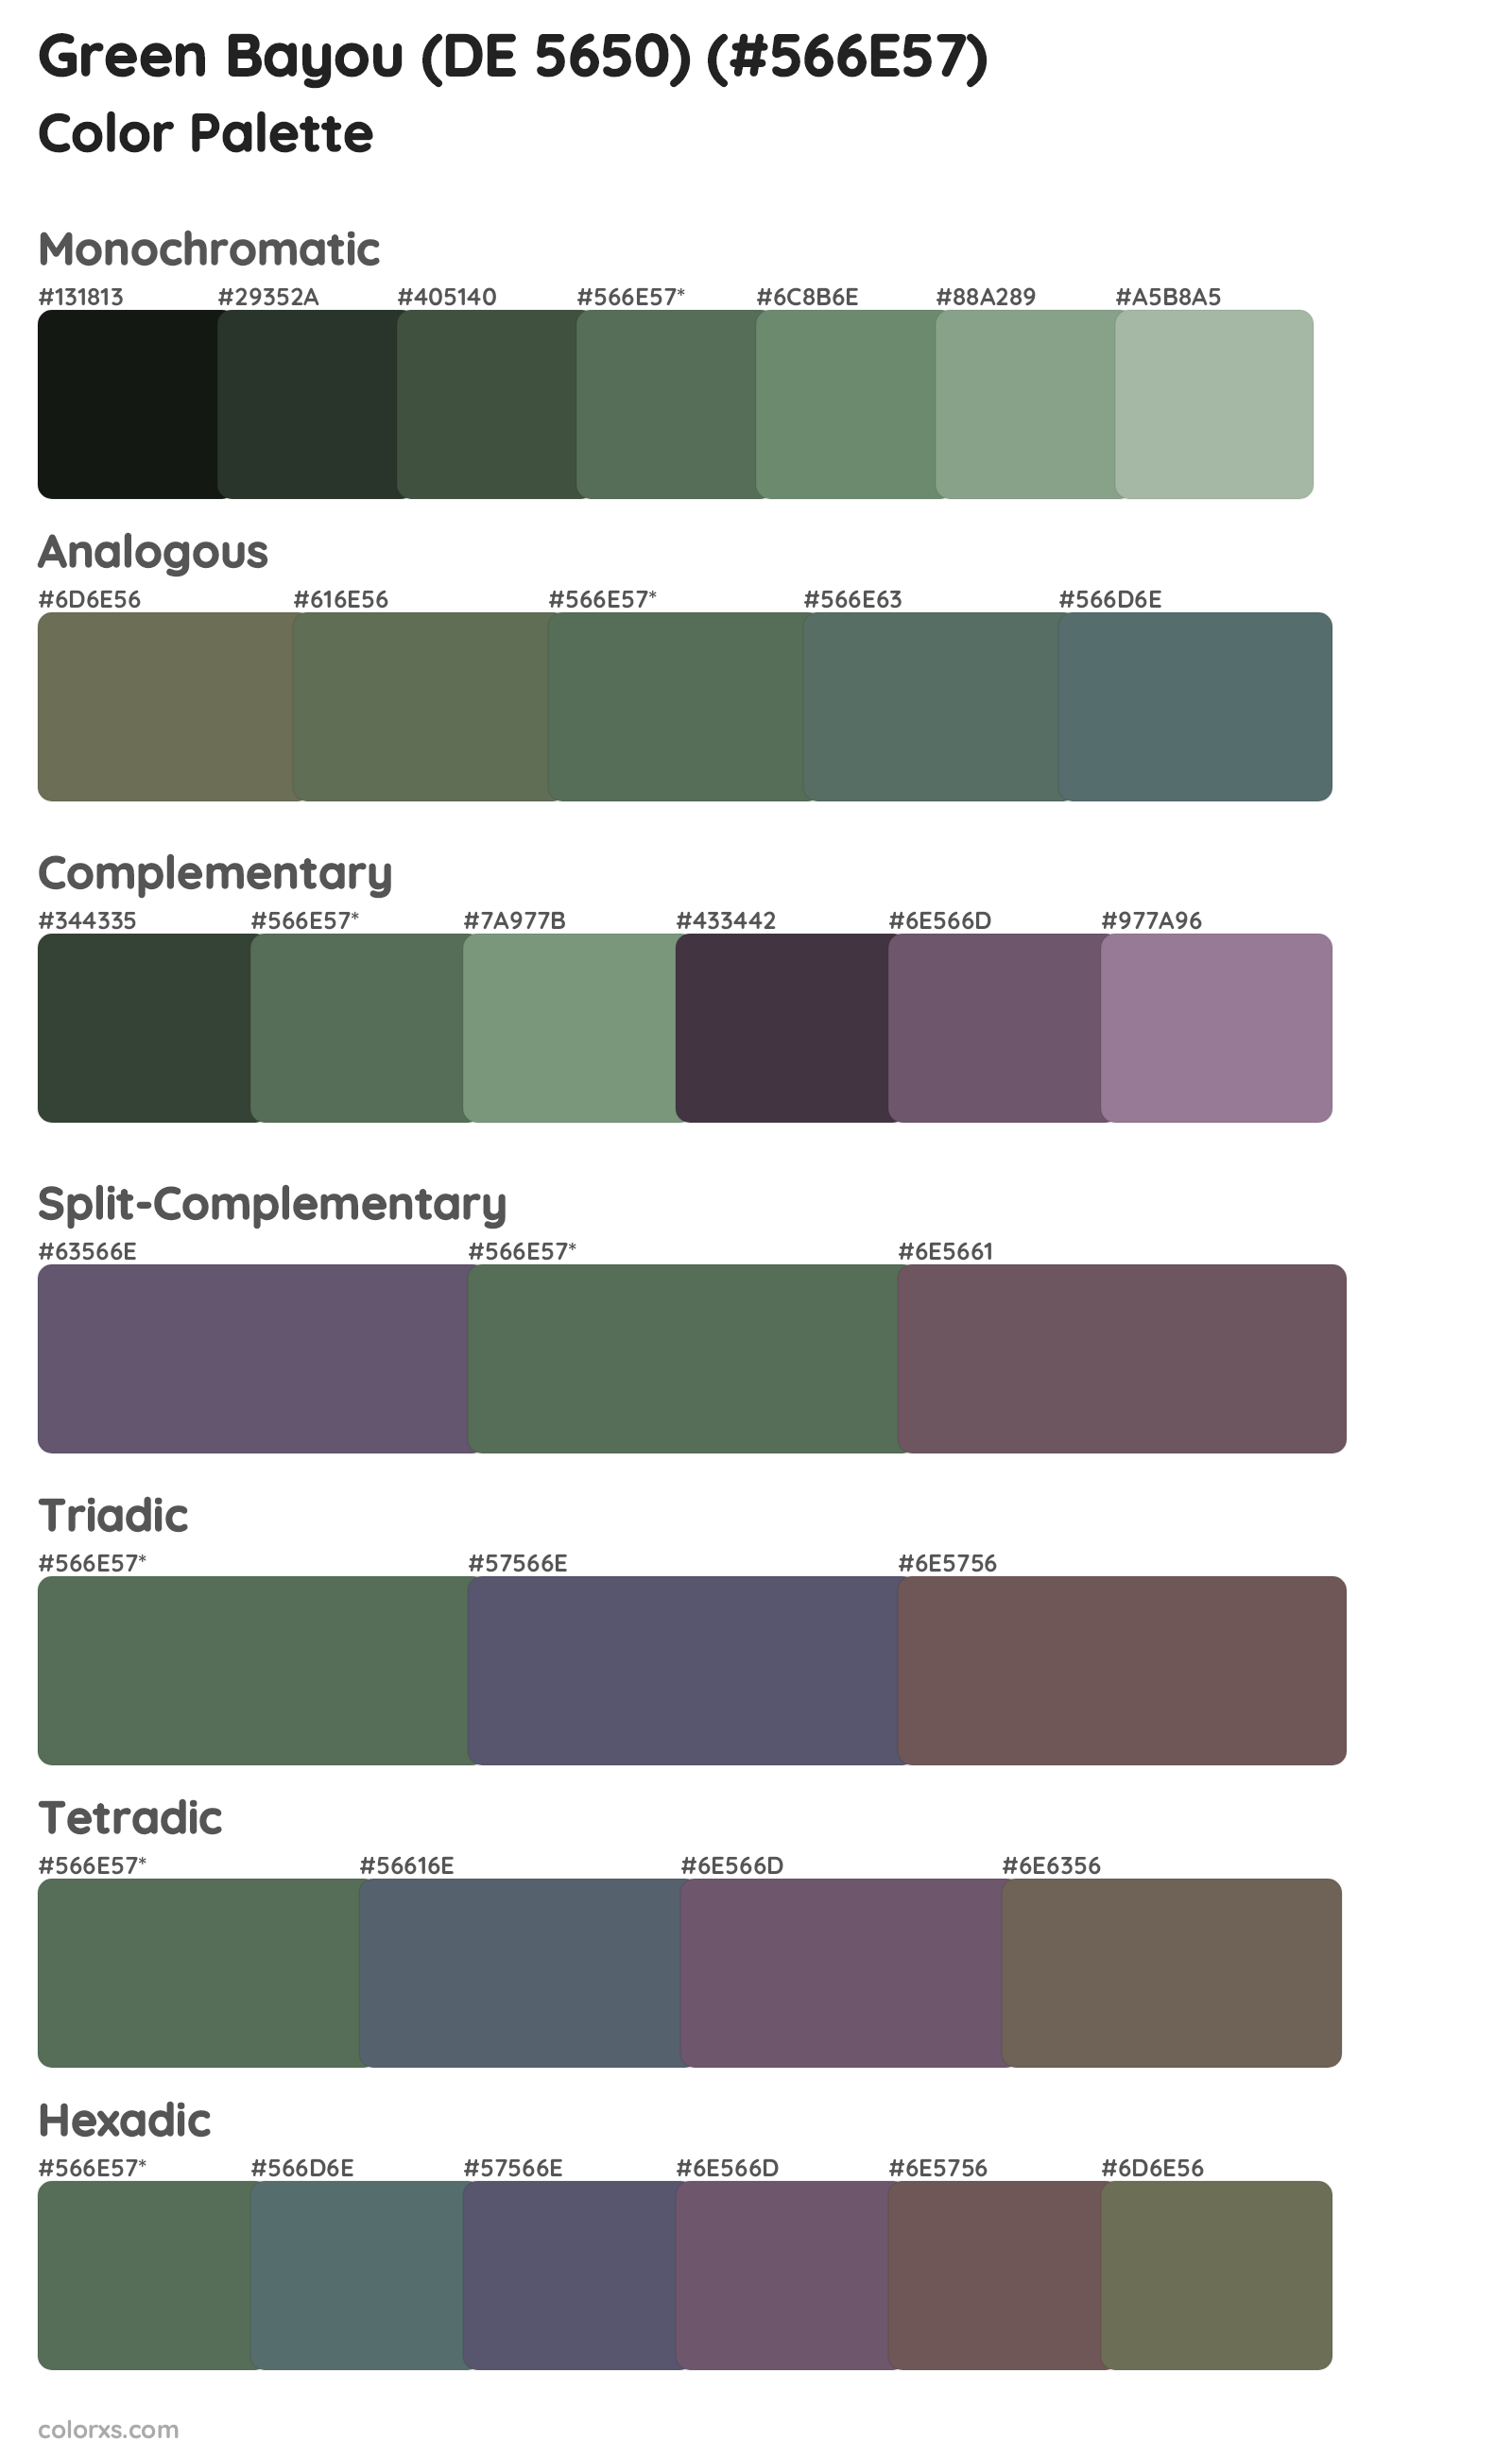 Green Bayou (DE 5650) Color Scheme Palettes